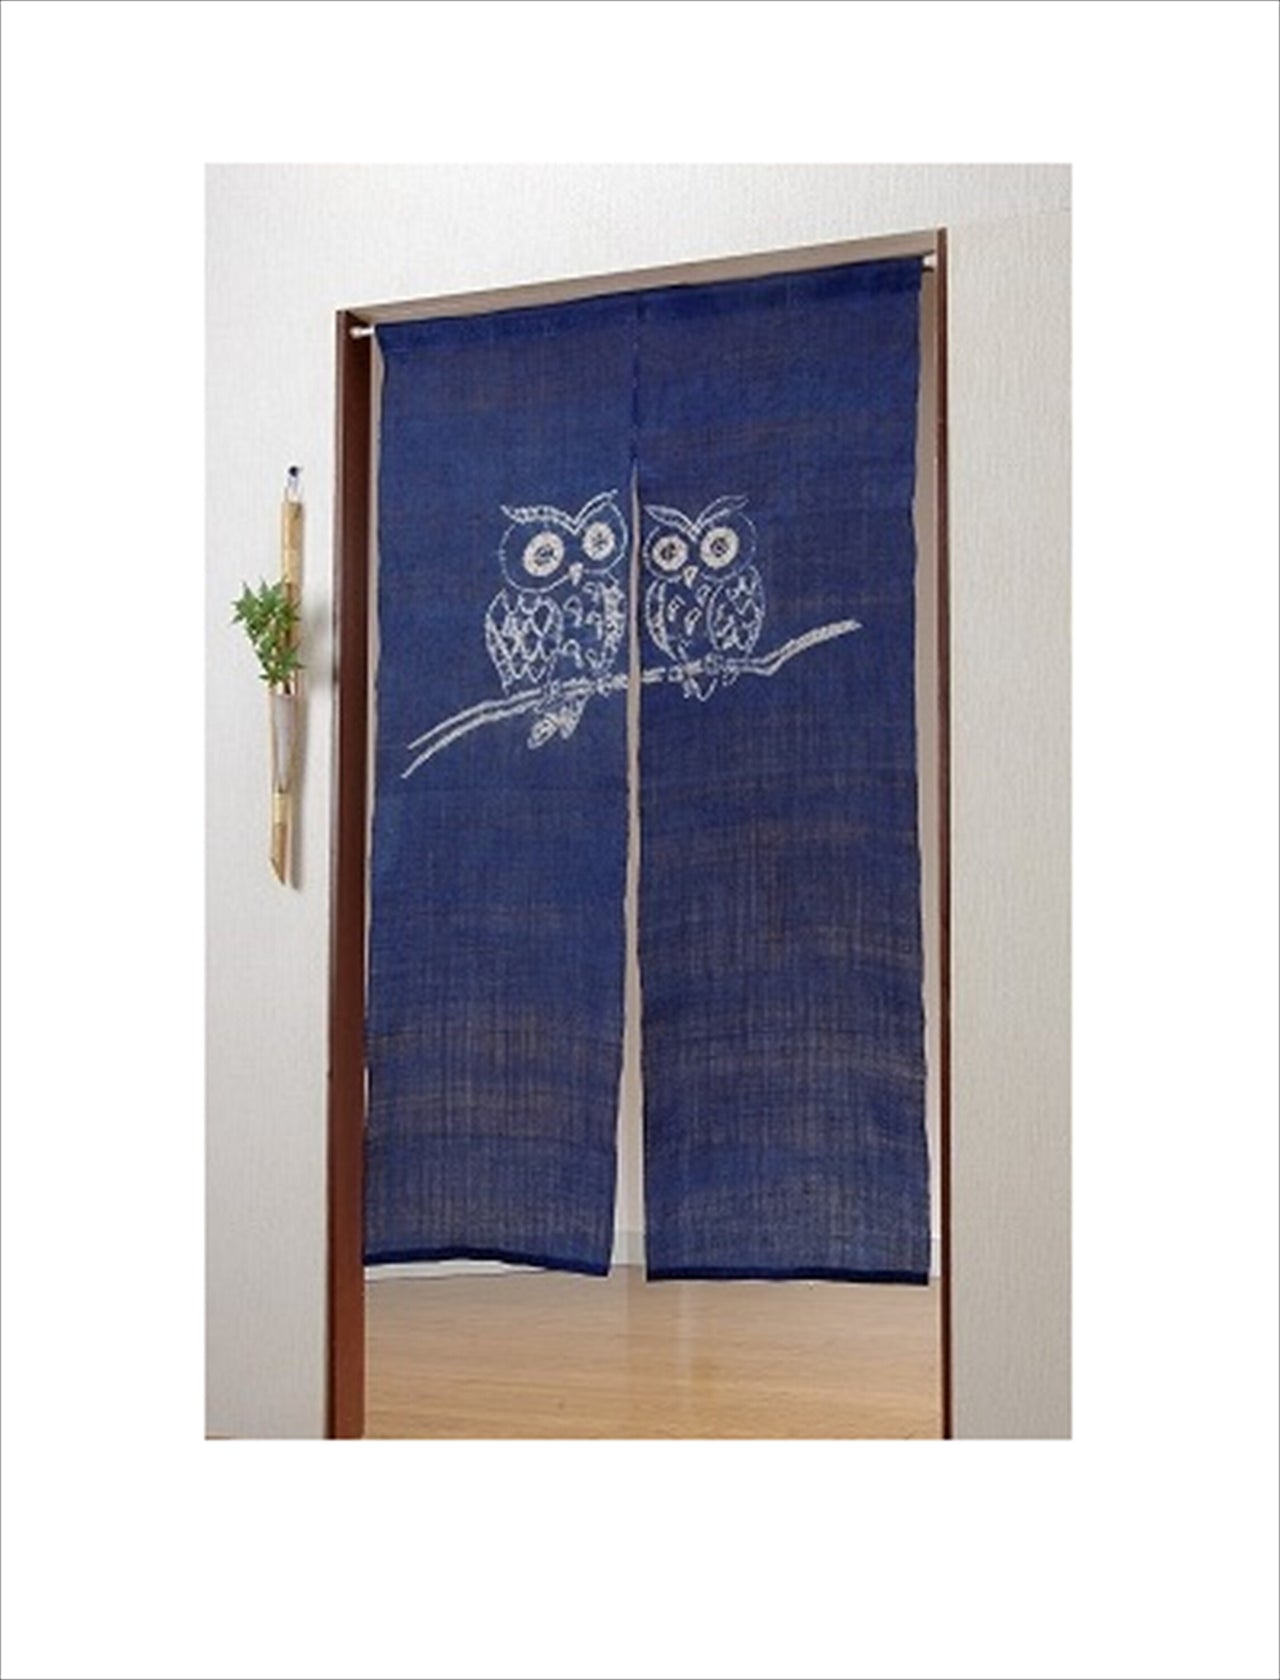 100％ Linen Hemp Owl Japanese art Modern tapestry 90×150cm Noren door curtain Wall hanging